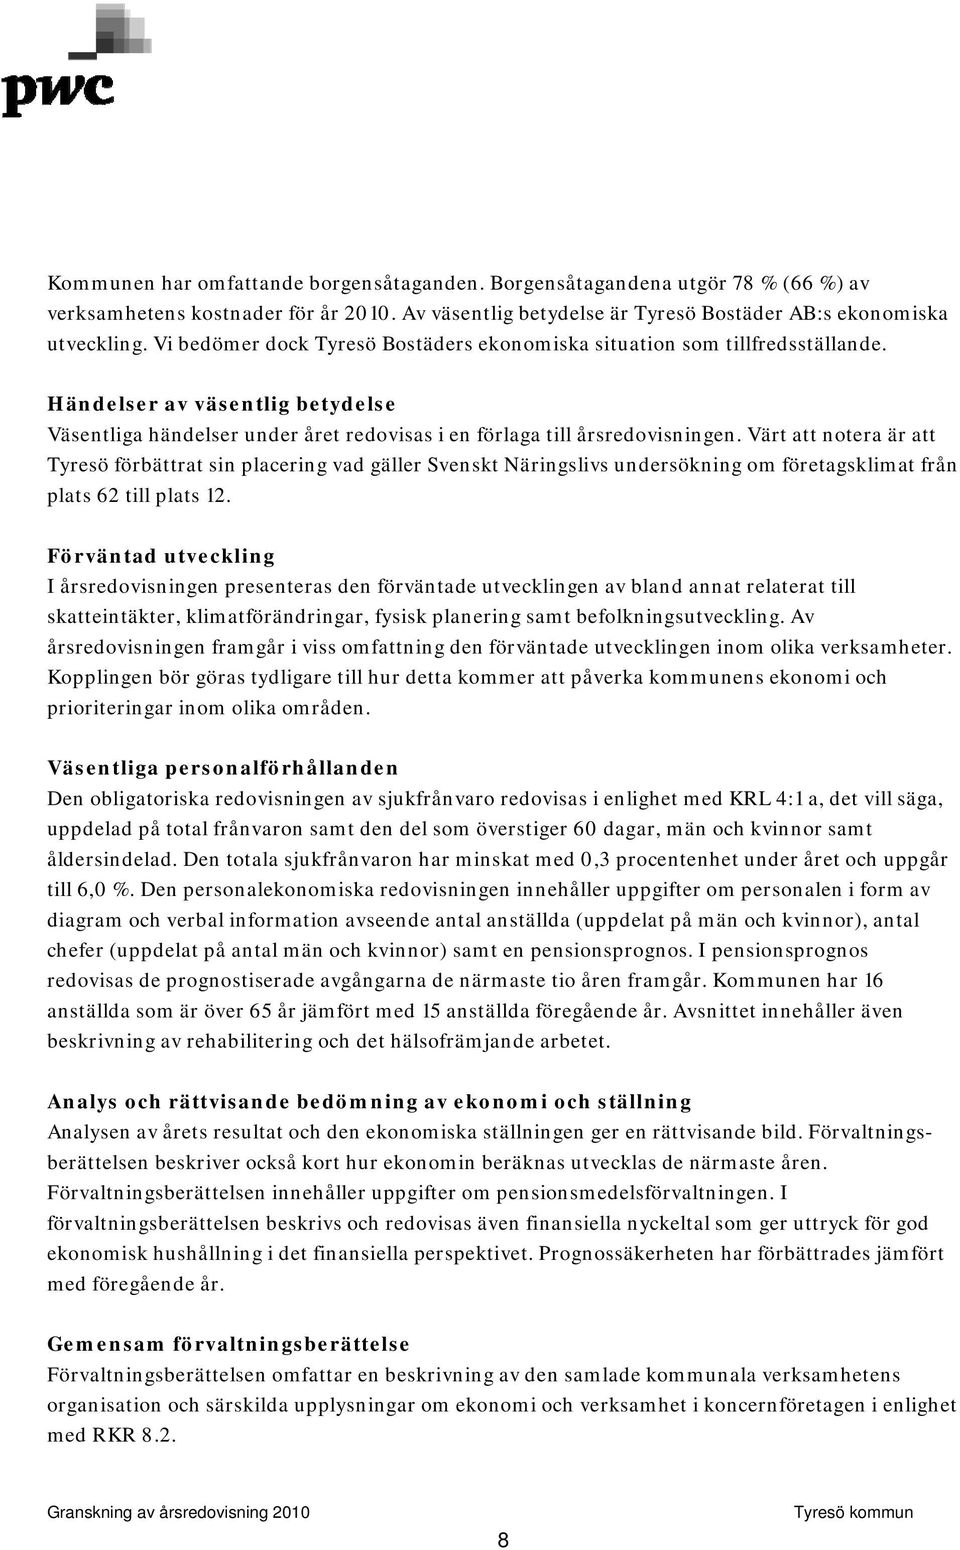 Värt att notera är att Tyresö förbättrat sin placering vad gäller Svenskt Näringslivs undersökning om företagsklimat från plats 62 till plats 12.